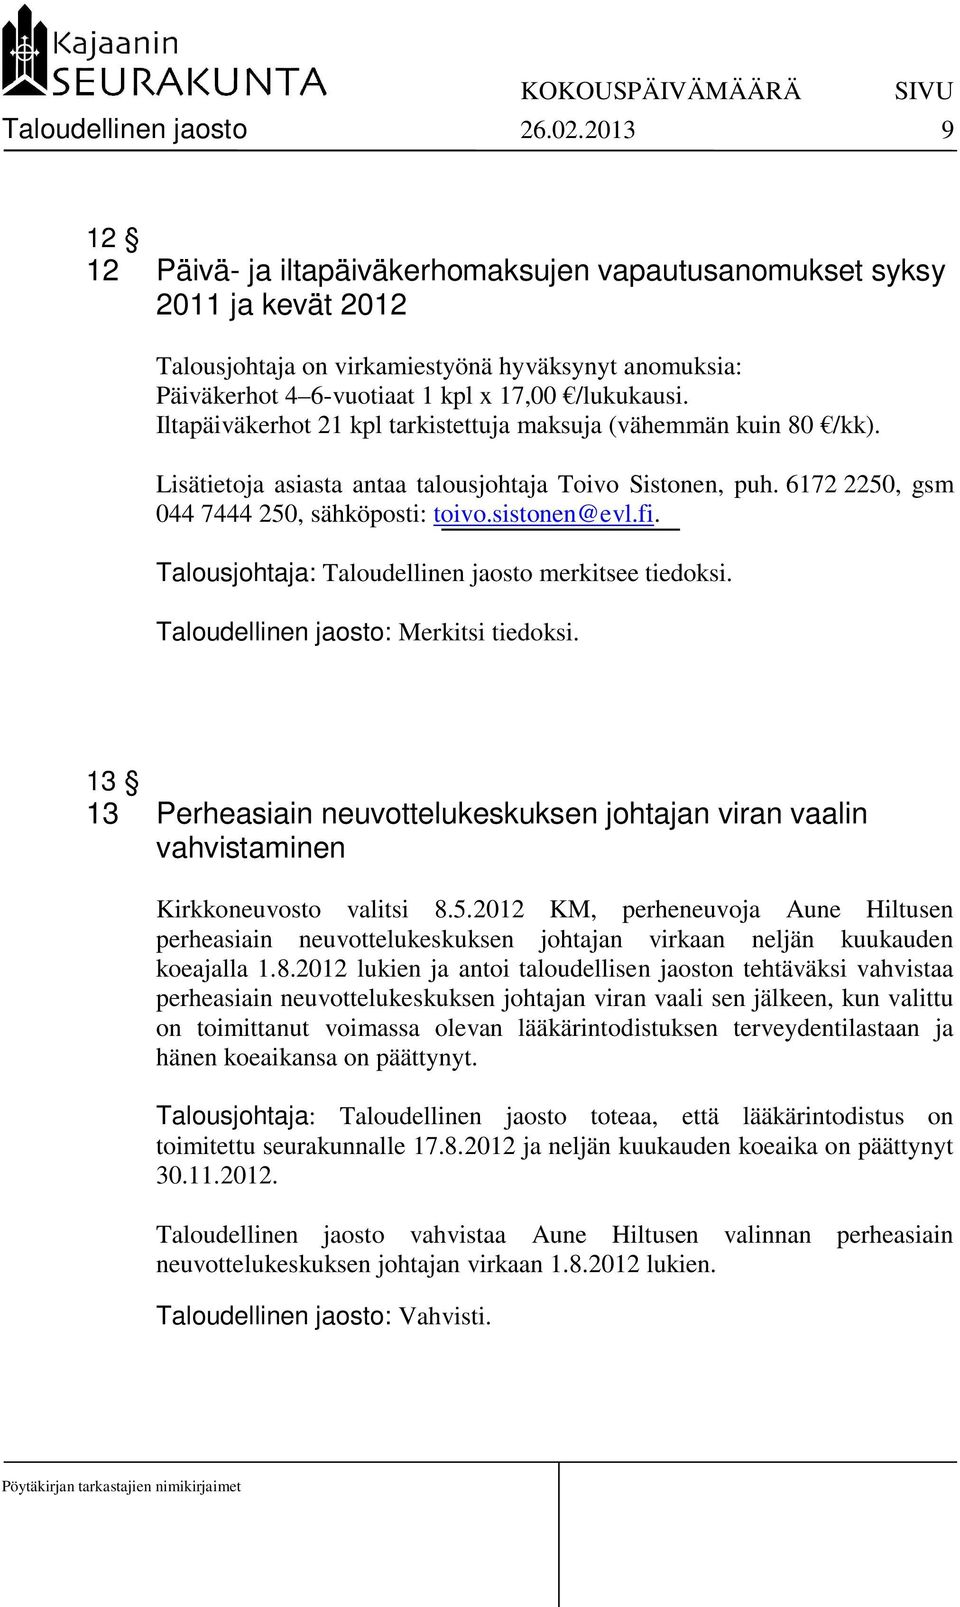 Iltapäiväkerhot 21 kpl tarkistettuja maksuja (vähemmän kuin 80 /kk). Lisätietoja asiasta antaa talousjohtaja Toivo Sistonen, puh. 6172 2250, gsm 044 7444 250, sähköposti: toivo.sistonen@evl.fi.